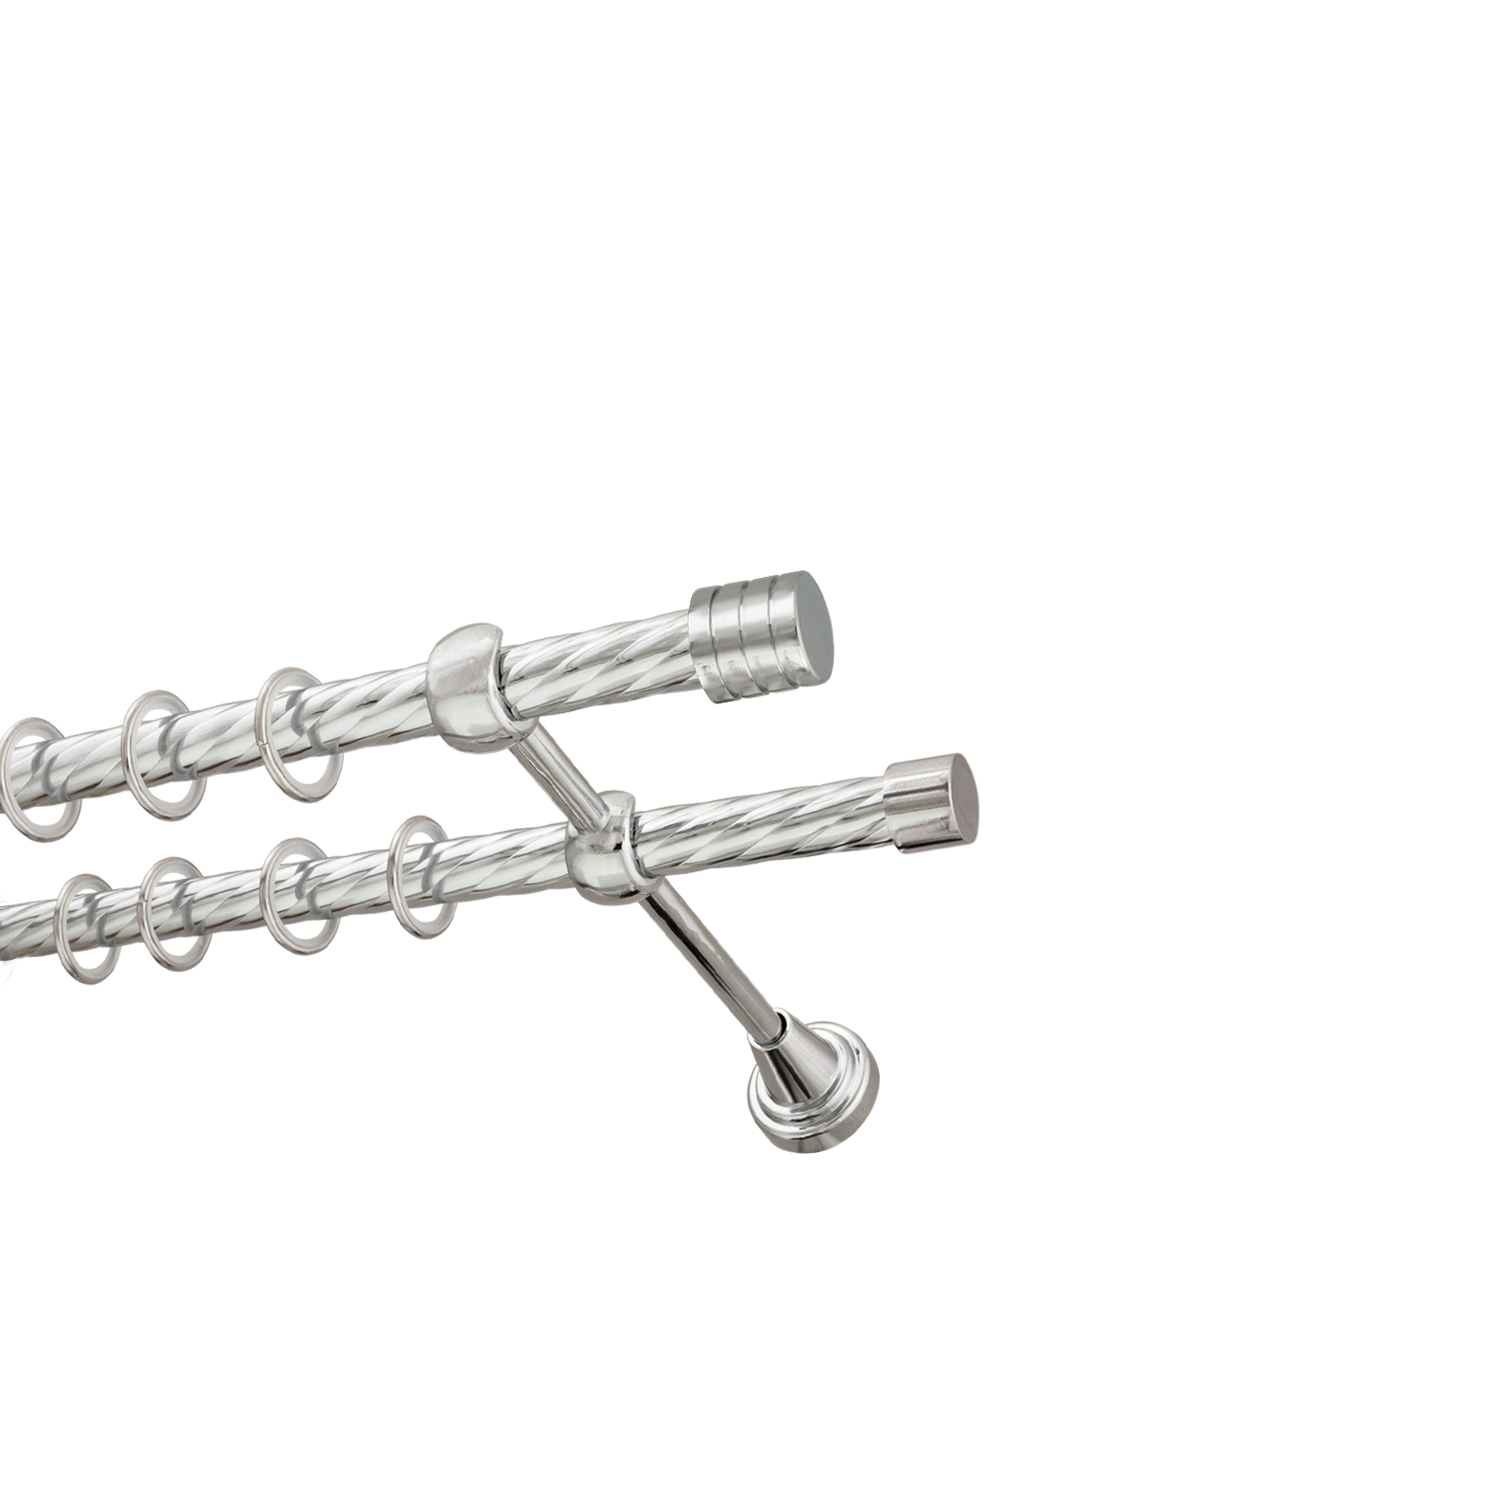 Металлический карниз для штор Подиум, двухрядный 16/16 мм, серебро, витая штанга, длина 200 см